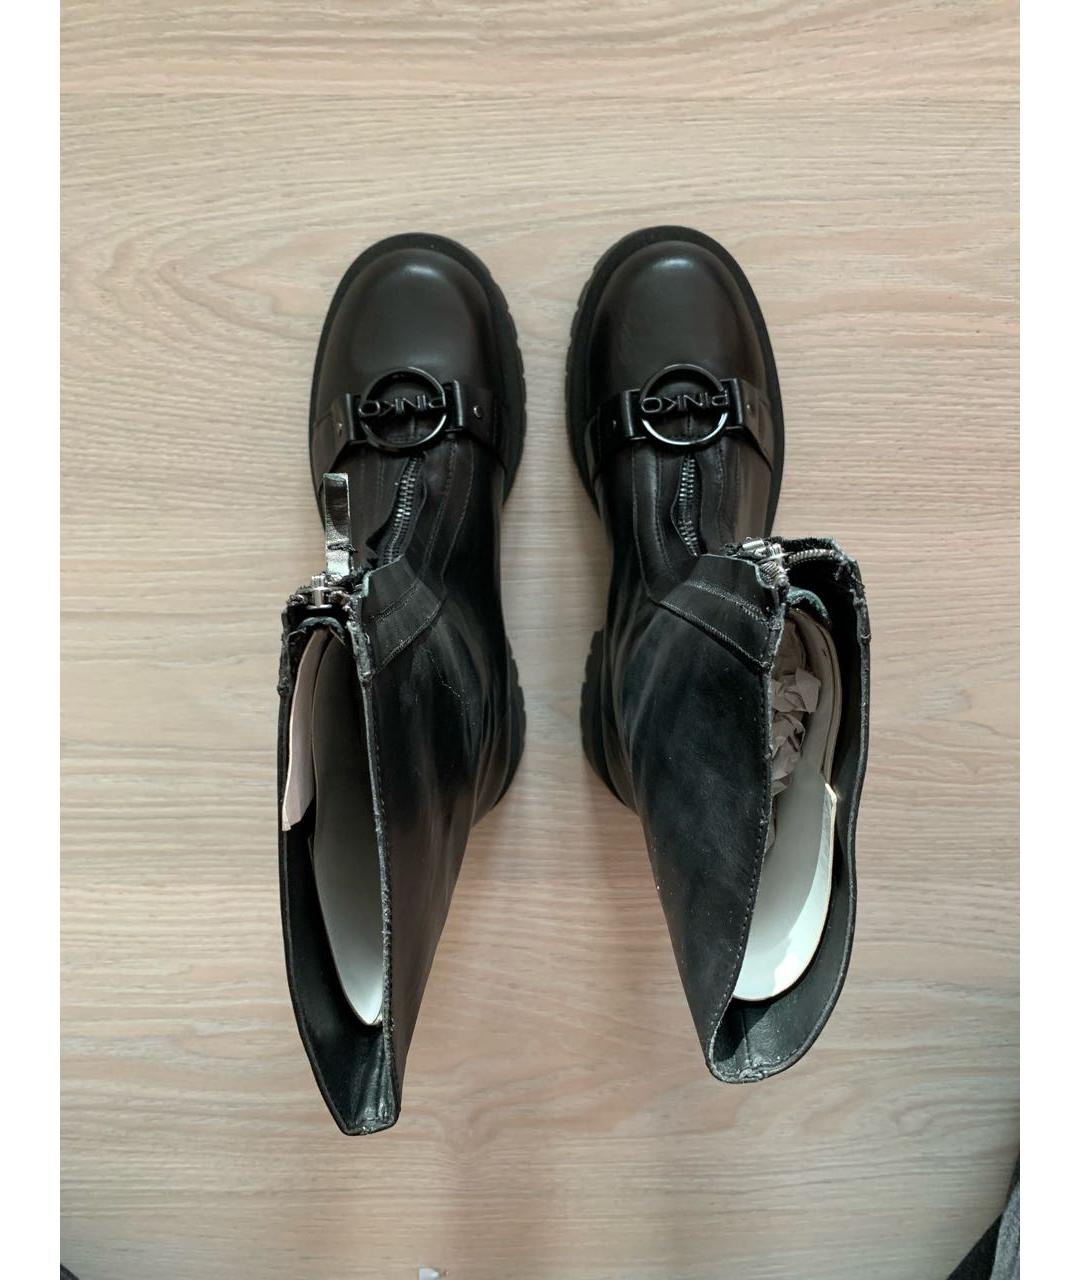 Ботинки PINKO для женщин купить за 19000 руб, арт. 1431707 –Интернет-магазин Oskelly